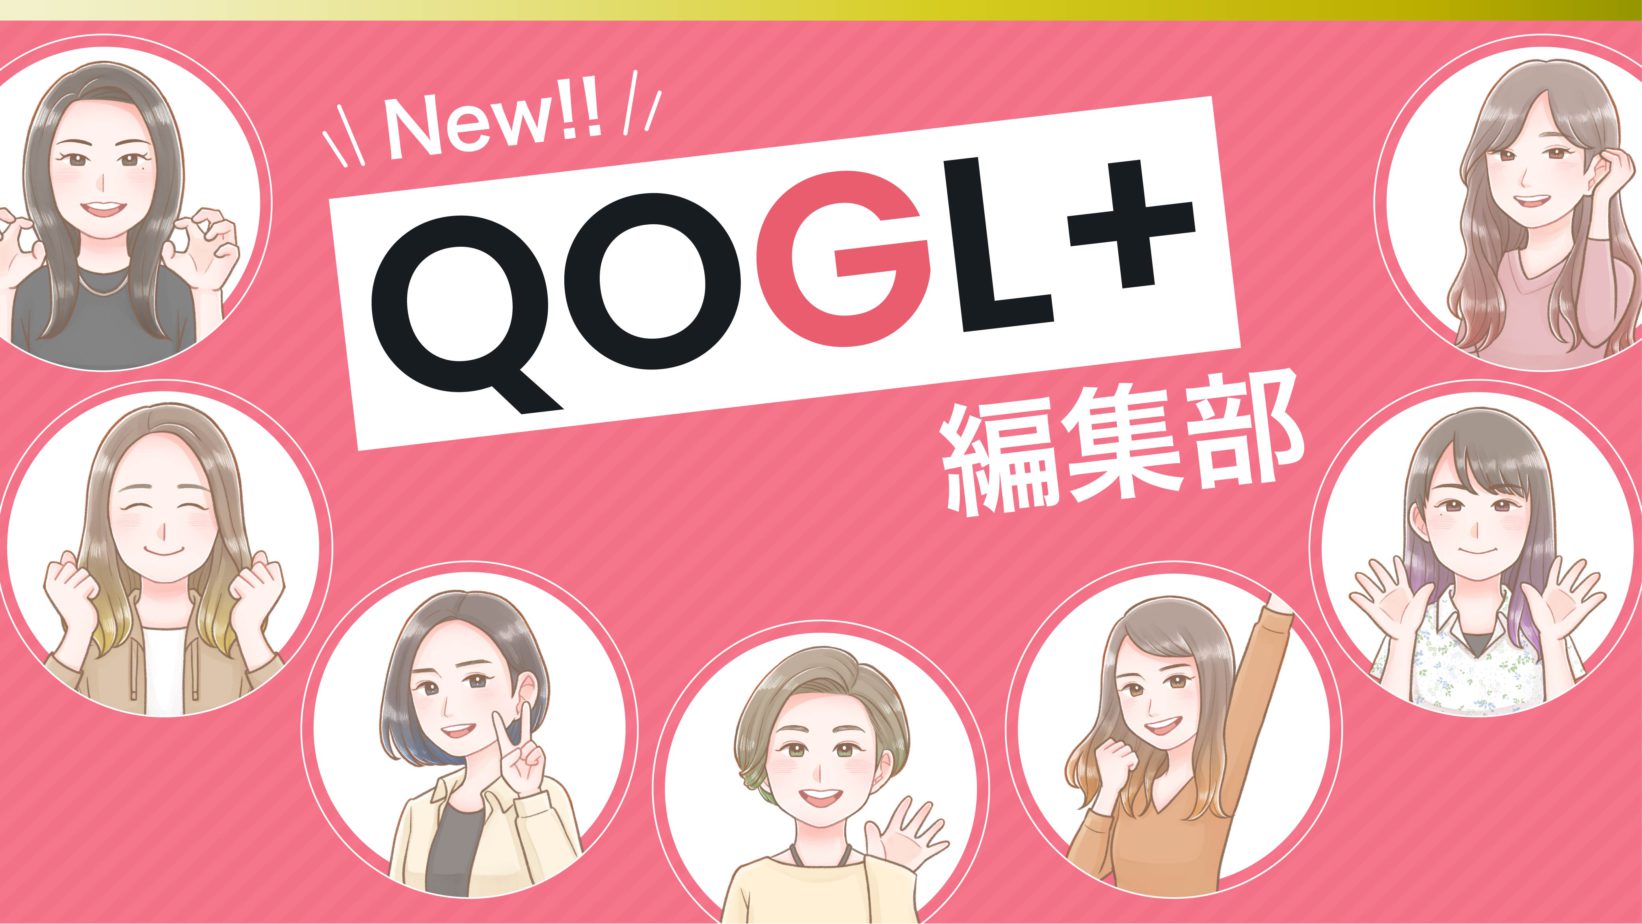 新生QOGL+編集部のメンバーを紹介します！